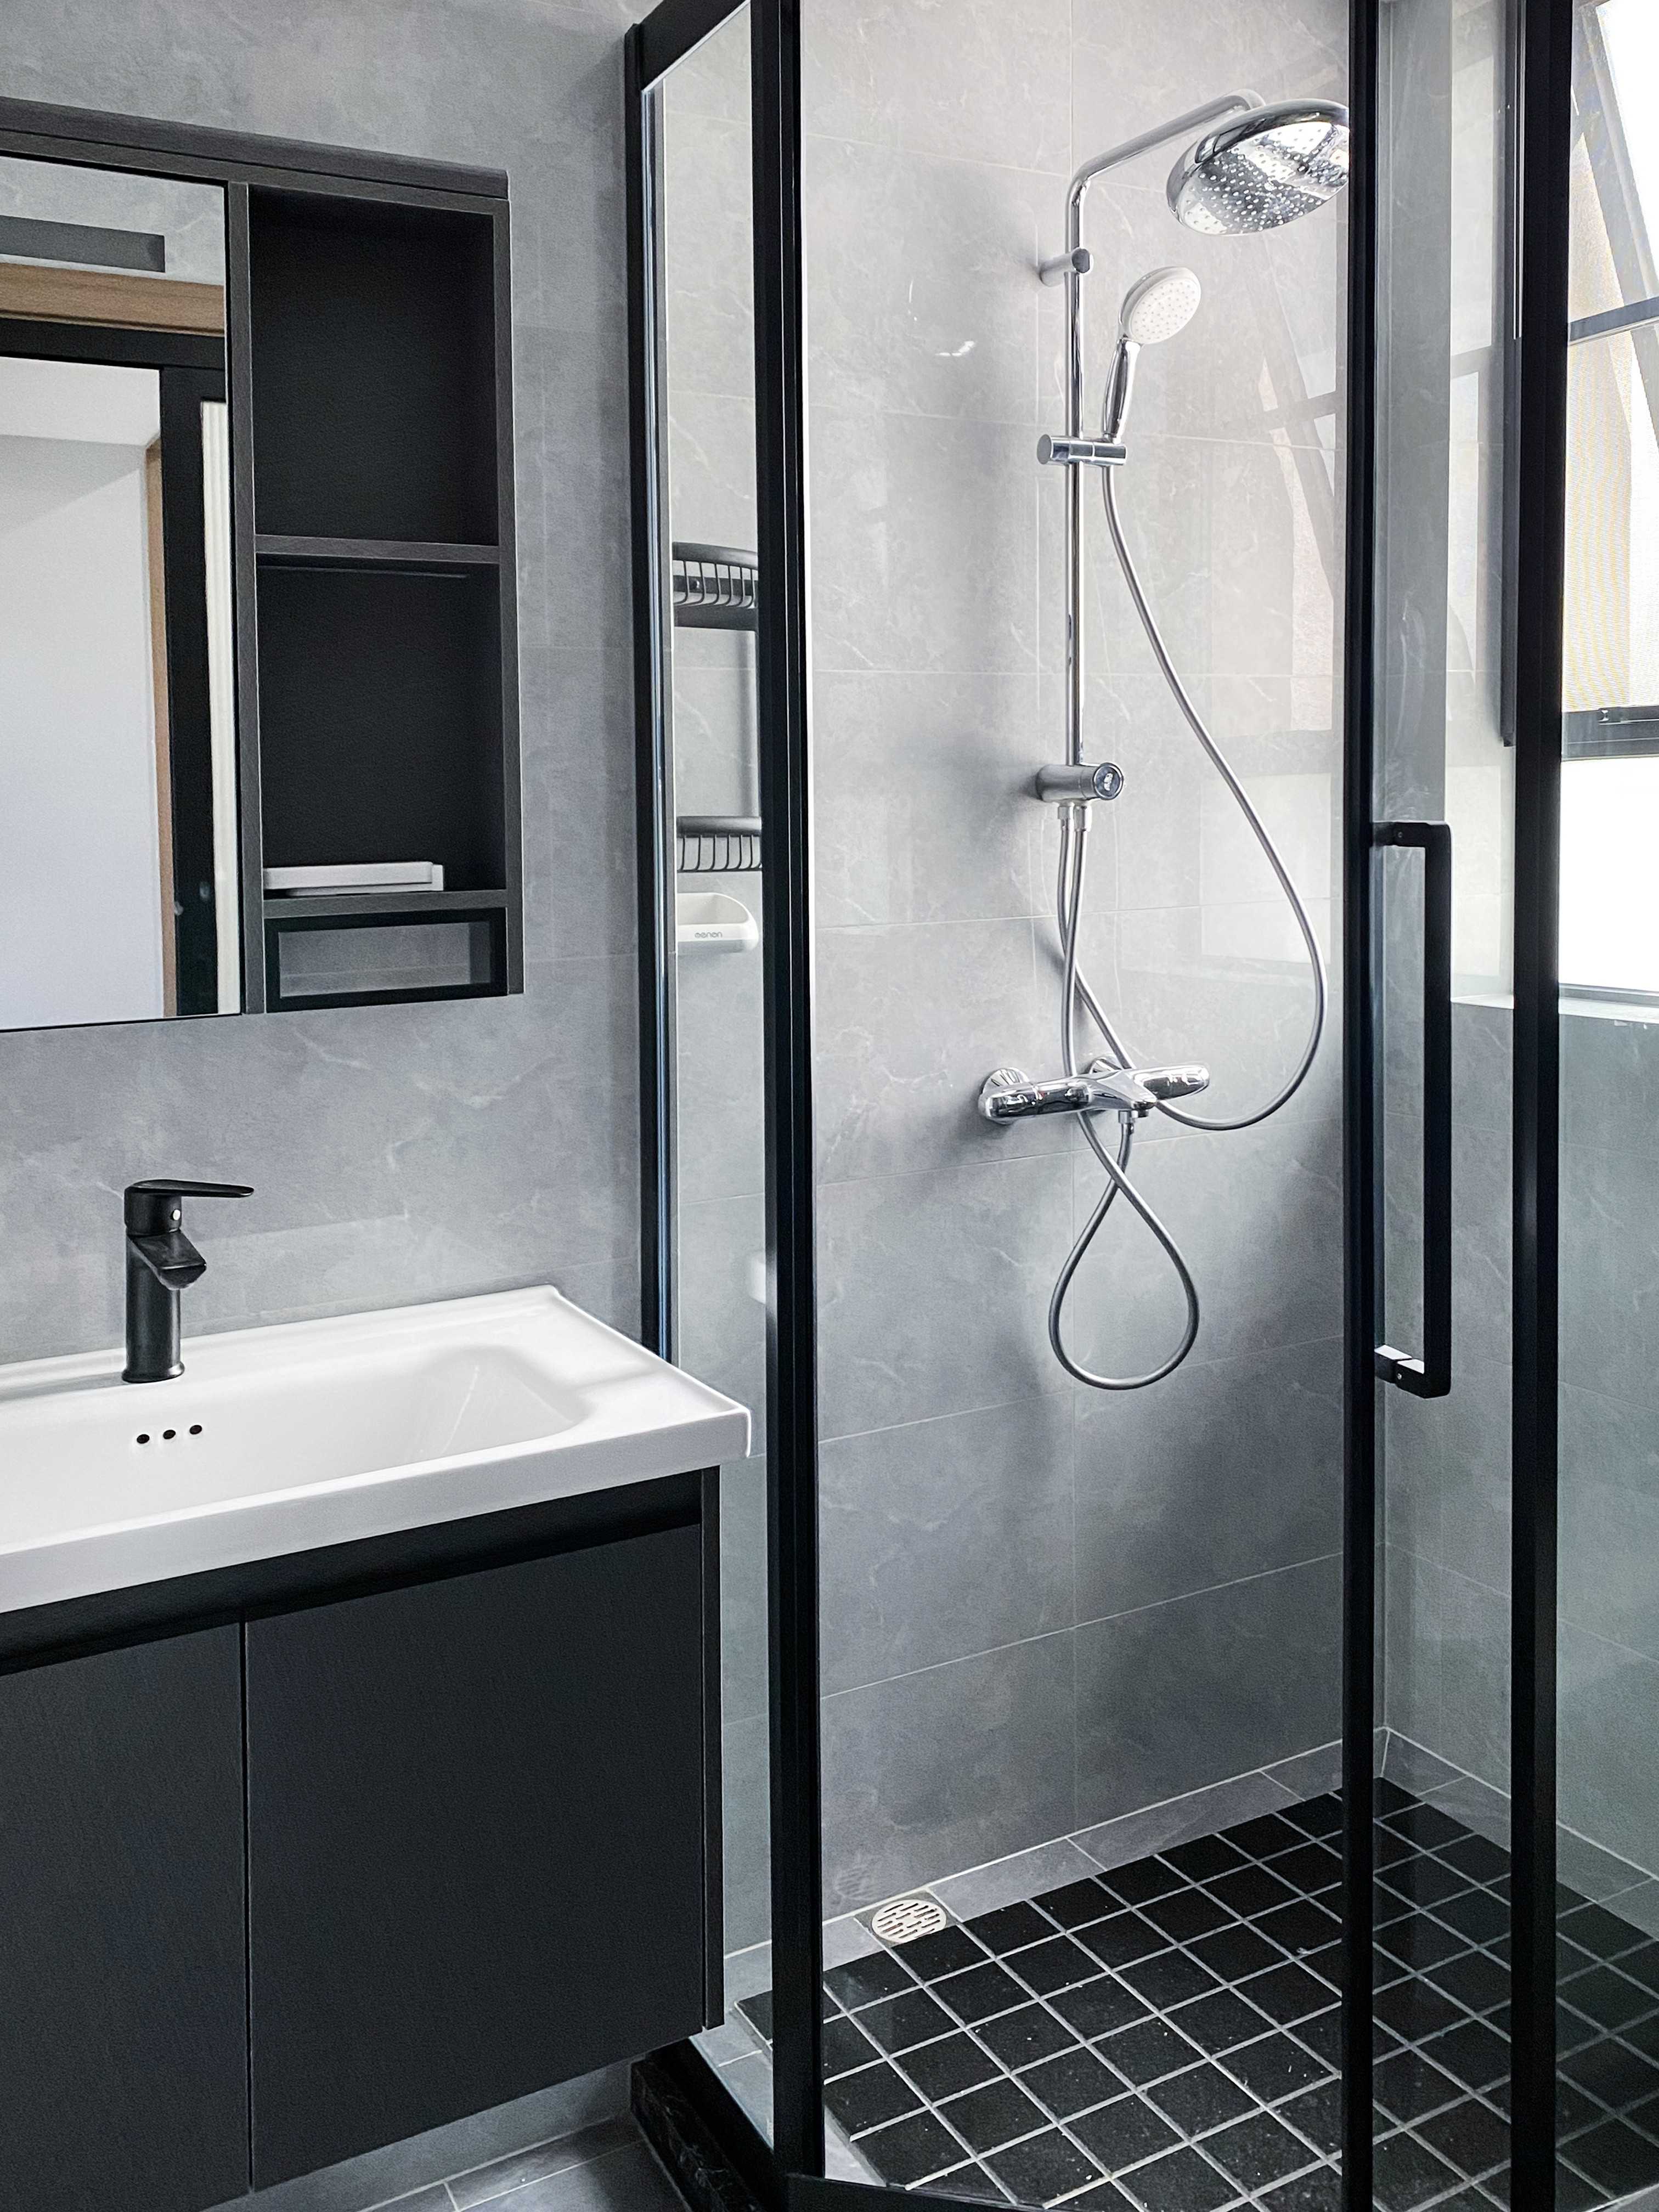 次卫则是以黑白灰色调为主，淋浴房的设计让其拥有干湿分离的效果。地面格纹地砖防滑的同时也减轻了空间单调的感觉~